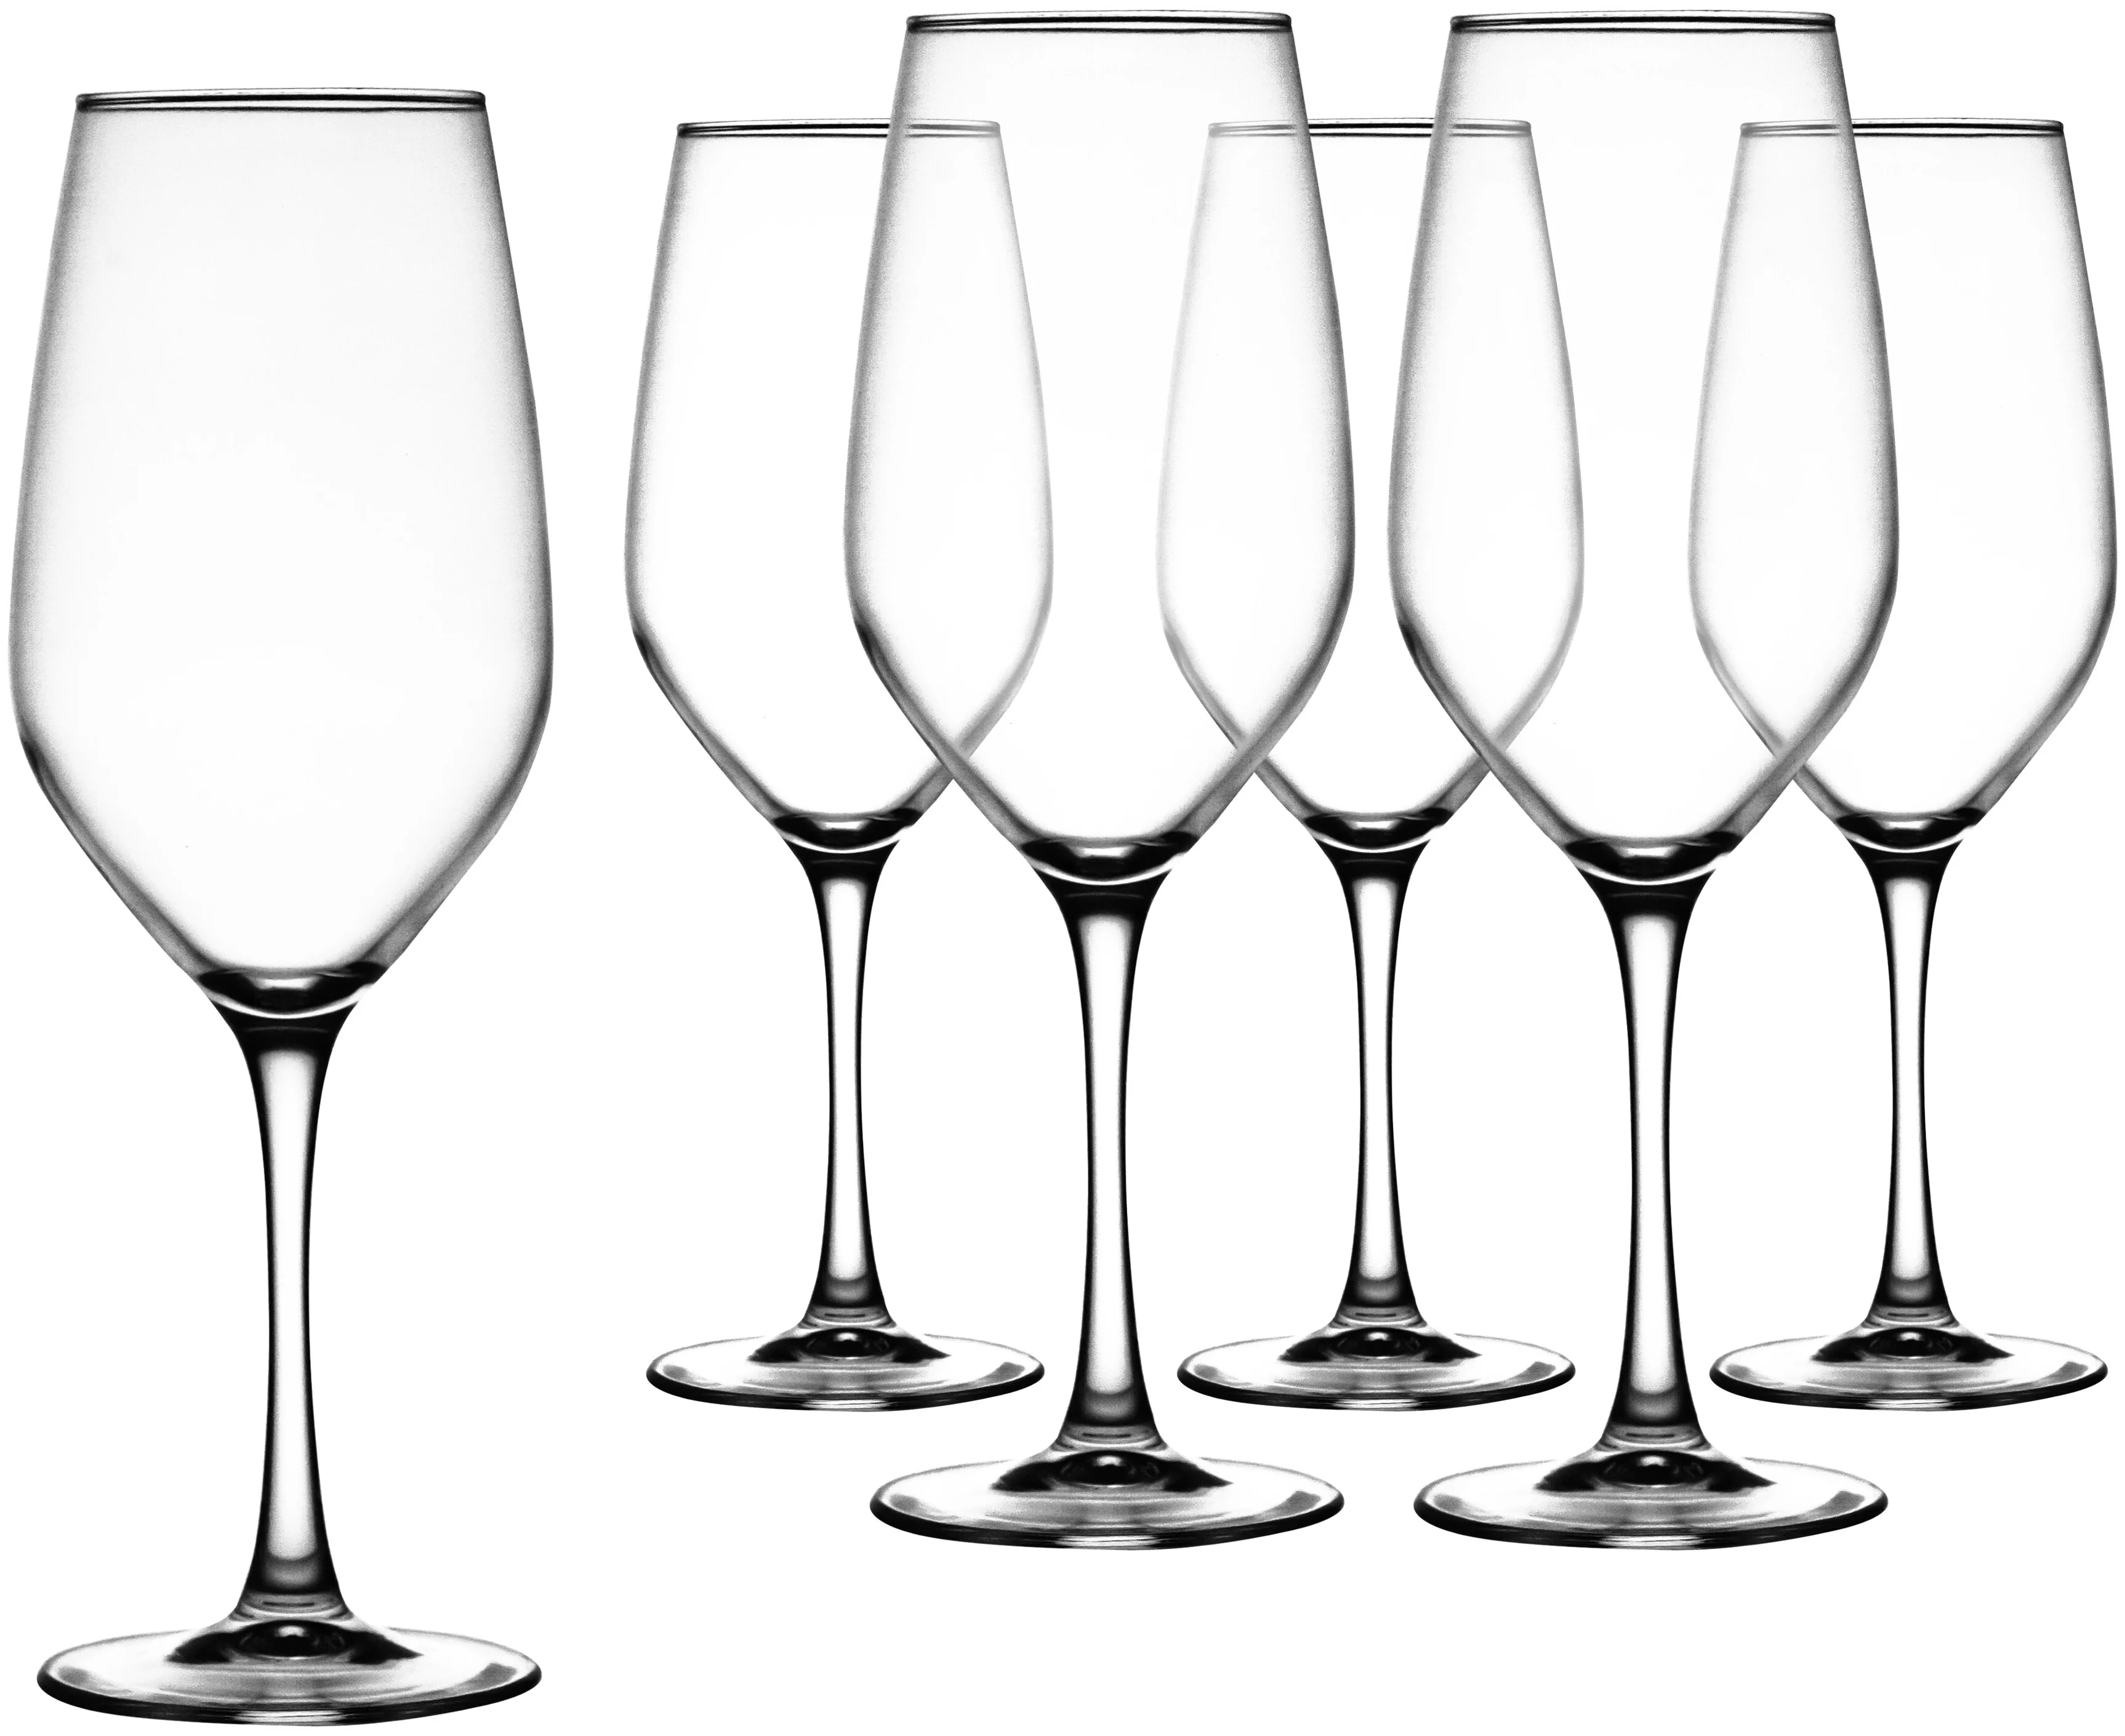 Набор бокалов для вина 6 шт. Luminarc набор бокалов для вина Celeste 580 мл 6 шт l5833. L5833 набор бокалов. Бокалы Luminarc 580 мл. Бокалы Люминарк для вина 6 шт.